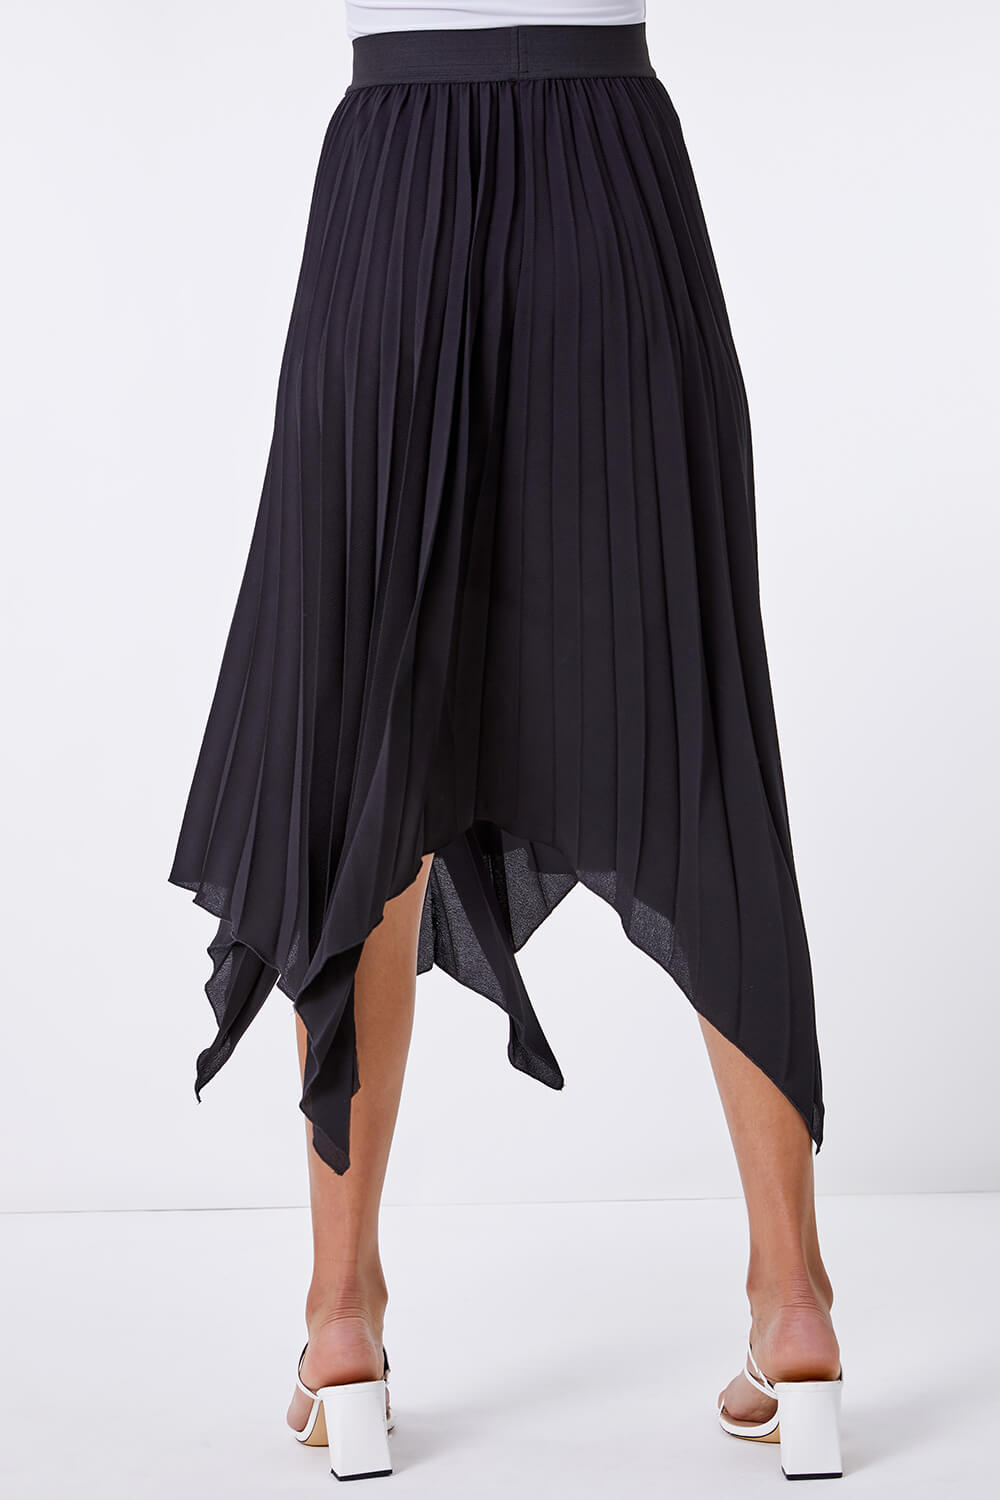 Black Pleated Hanky Hem Midi Skirt, Image 3 of 4